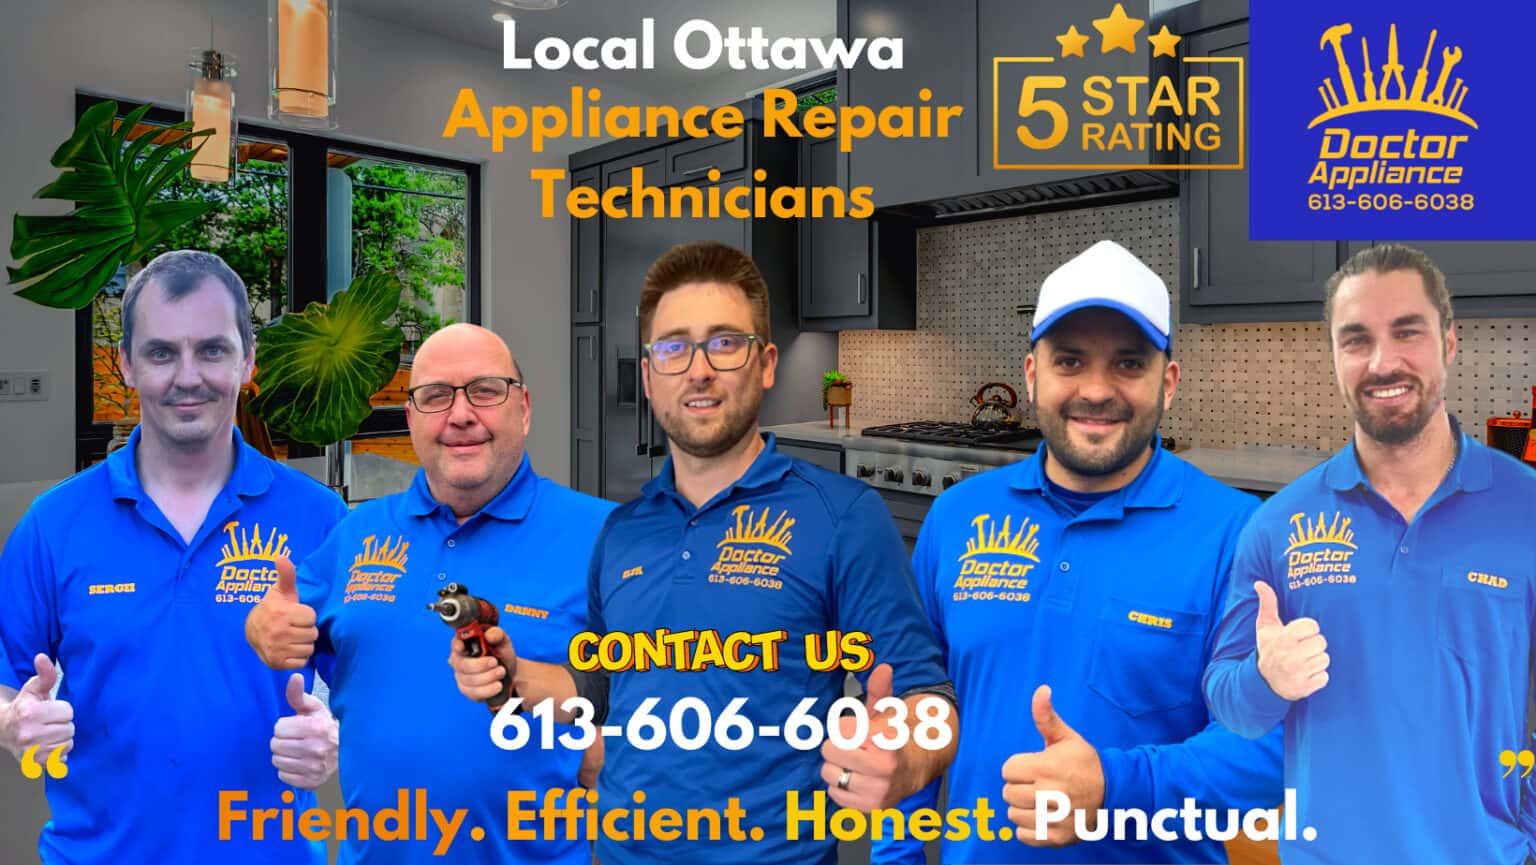 Ottawa appliance repair technicians 1536x865 crp - ⛑ Best Same Day Appliance Repair Service In Ottawa